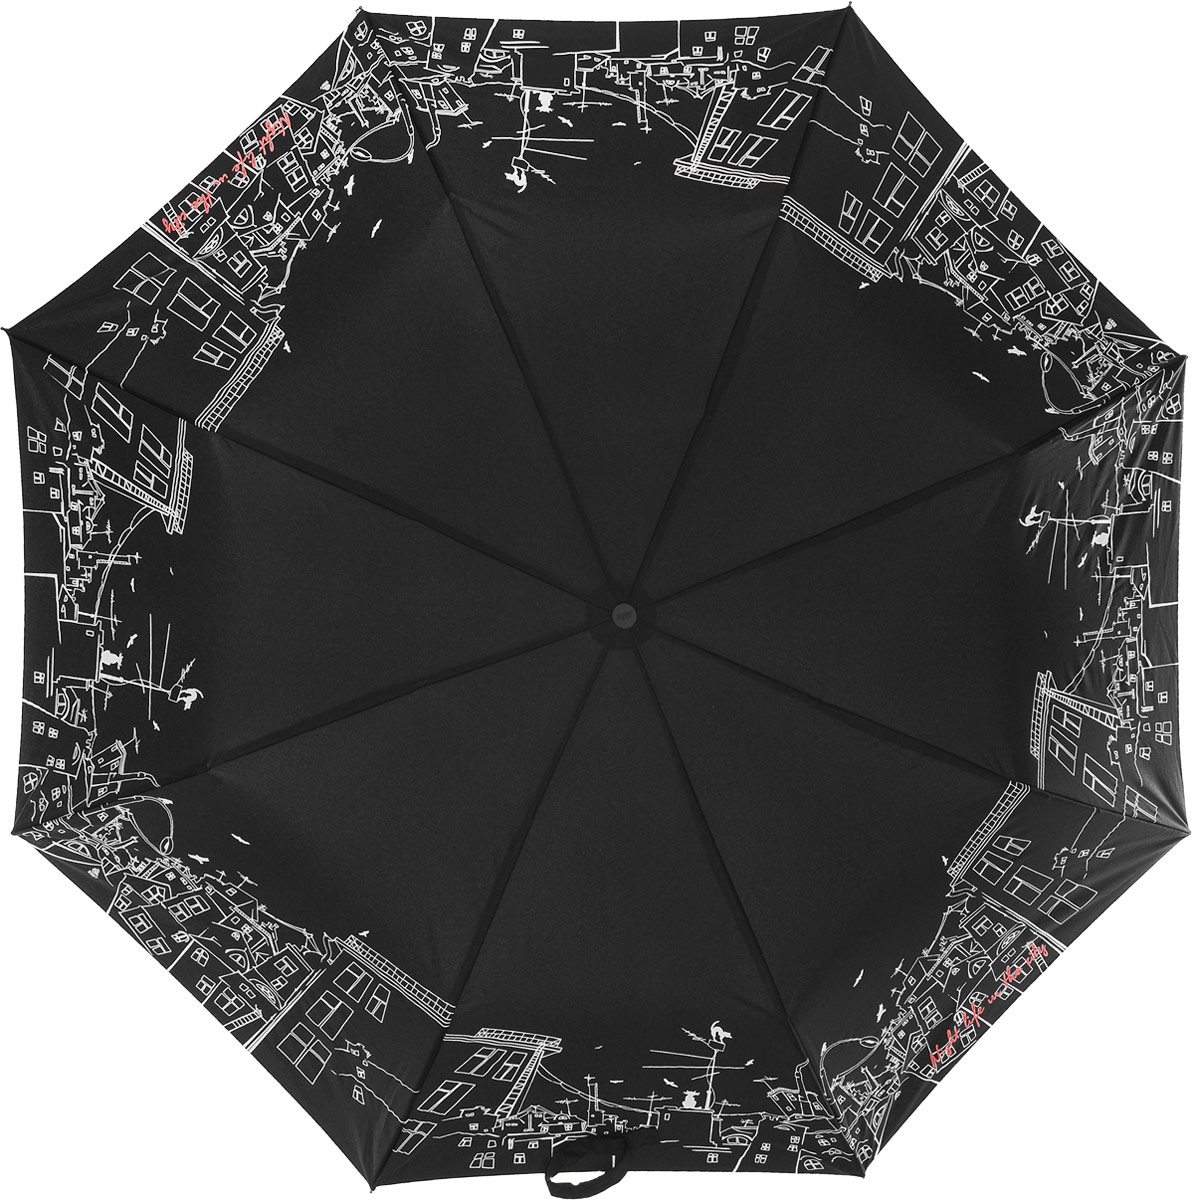 Зонт женский Zest, автомат, 3 сложения, цвет: черный, белый, коралловый. 23849-8047